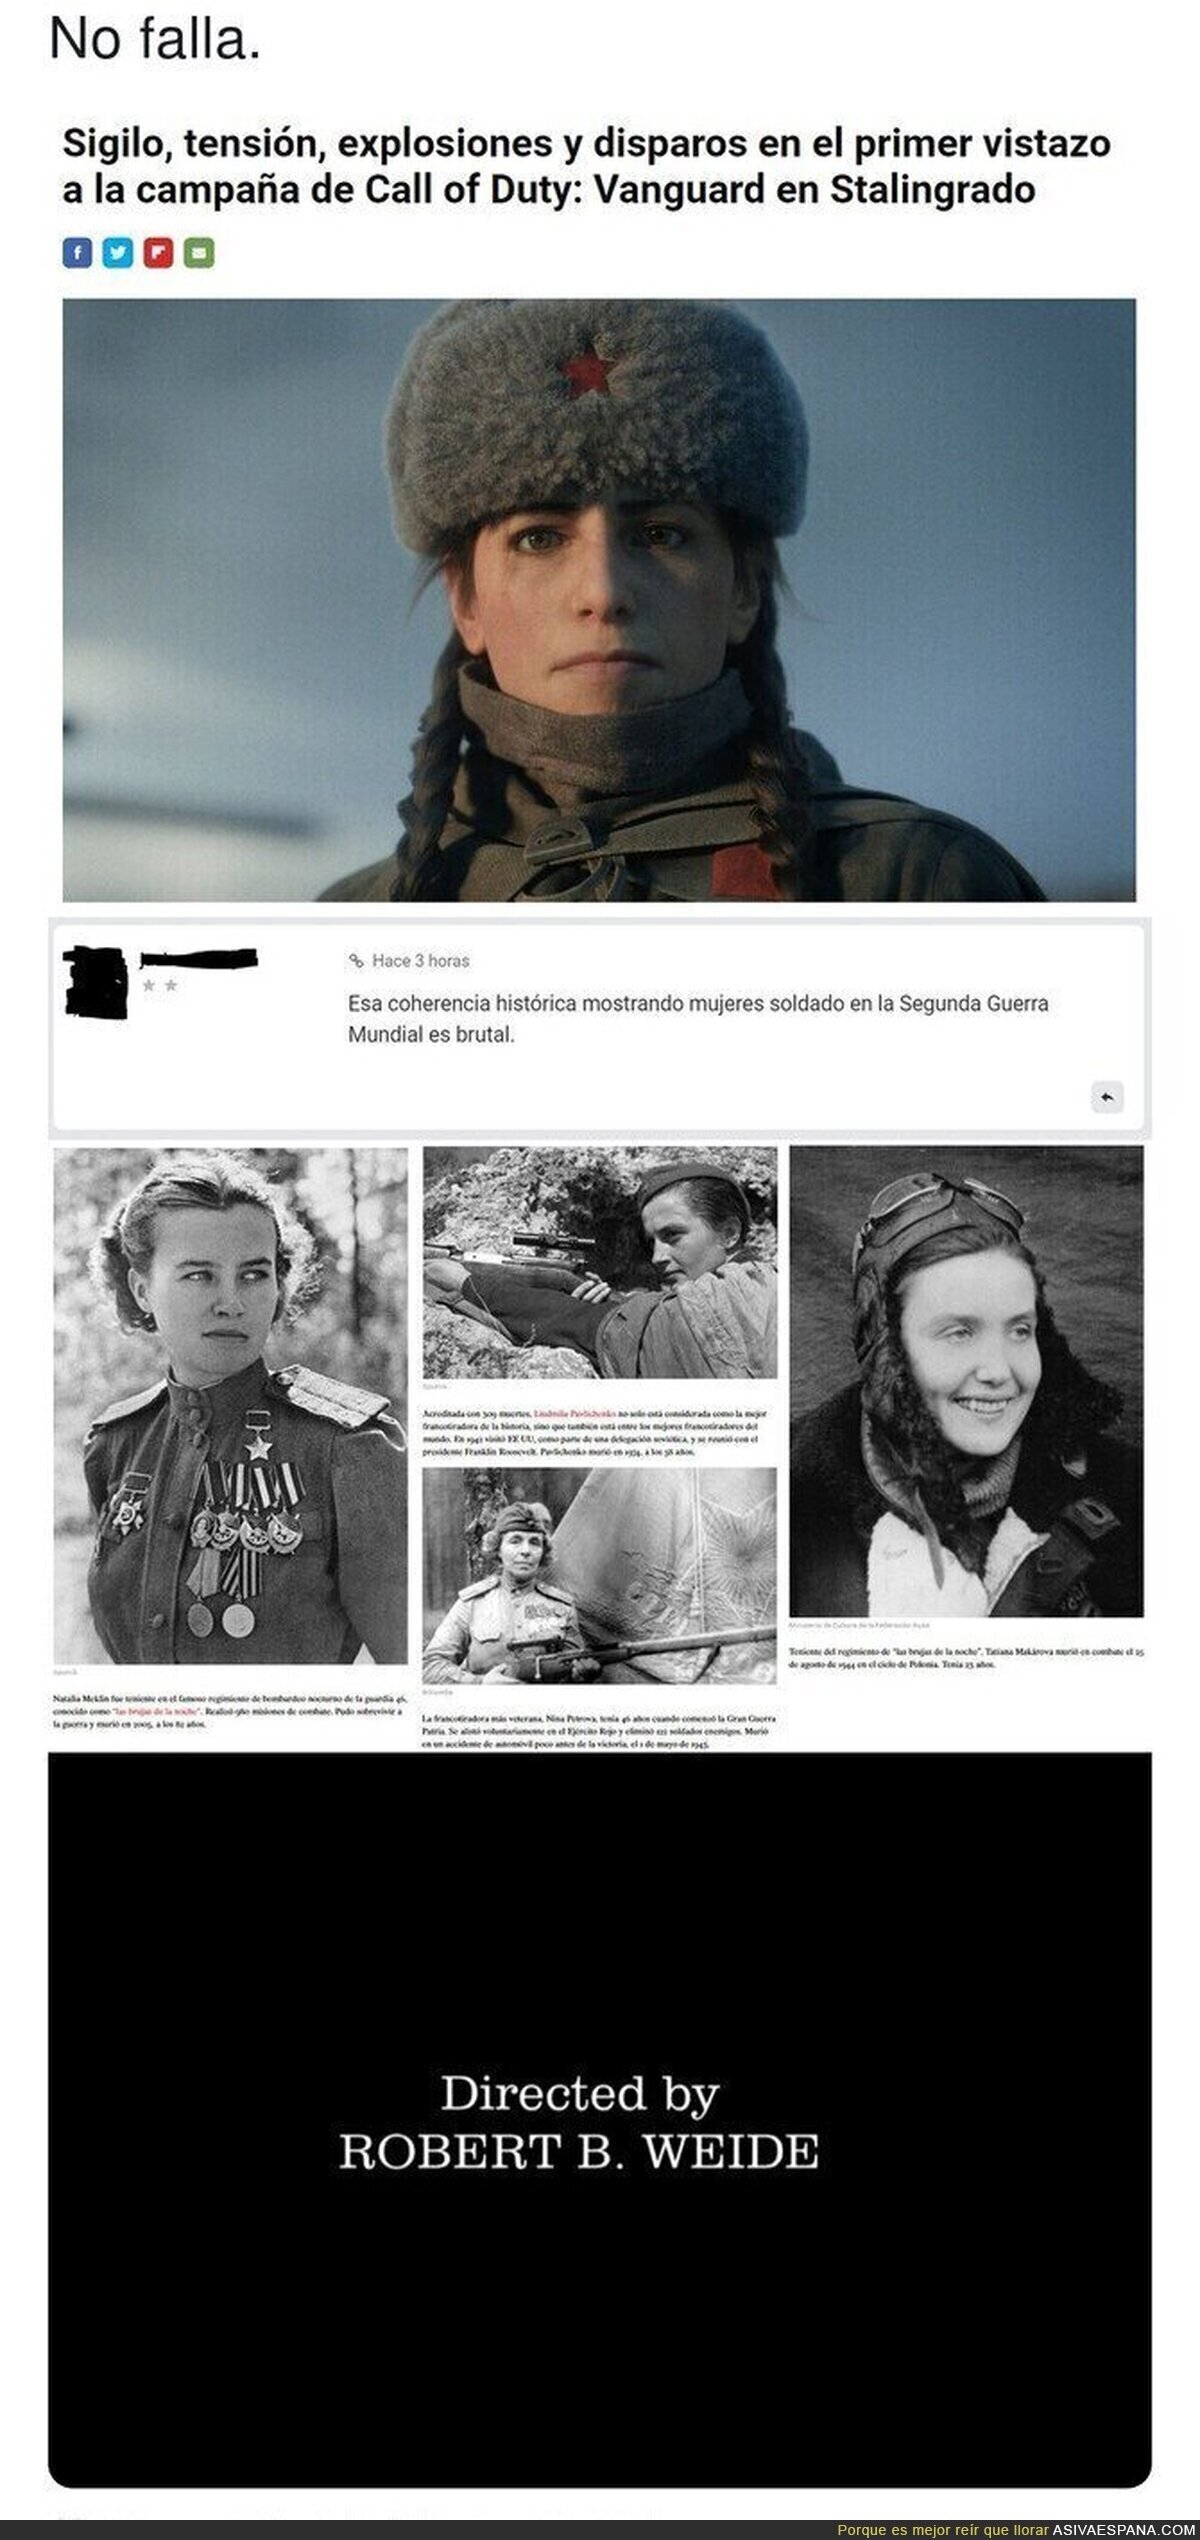 La ignorancia de no conocer eque en la Guerra había mujeres...